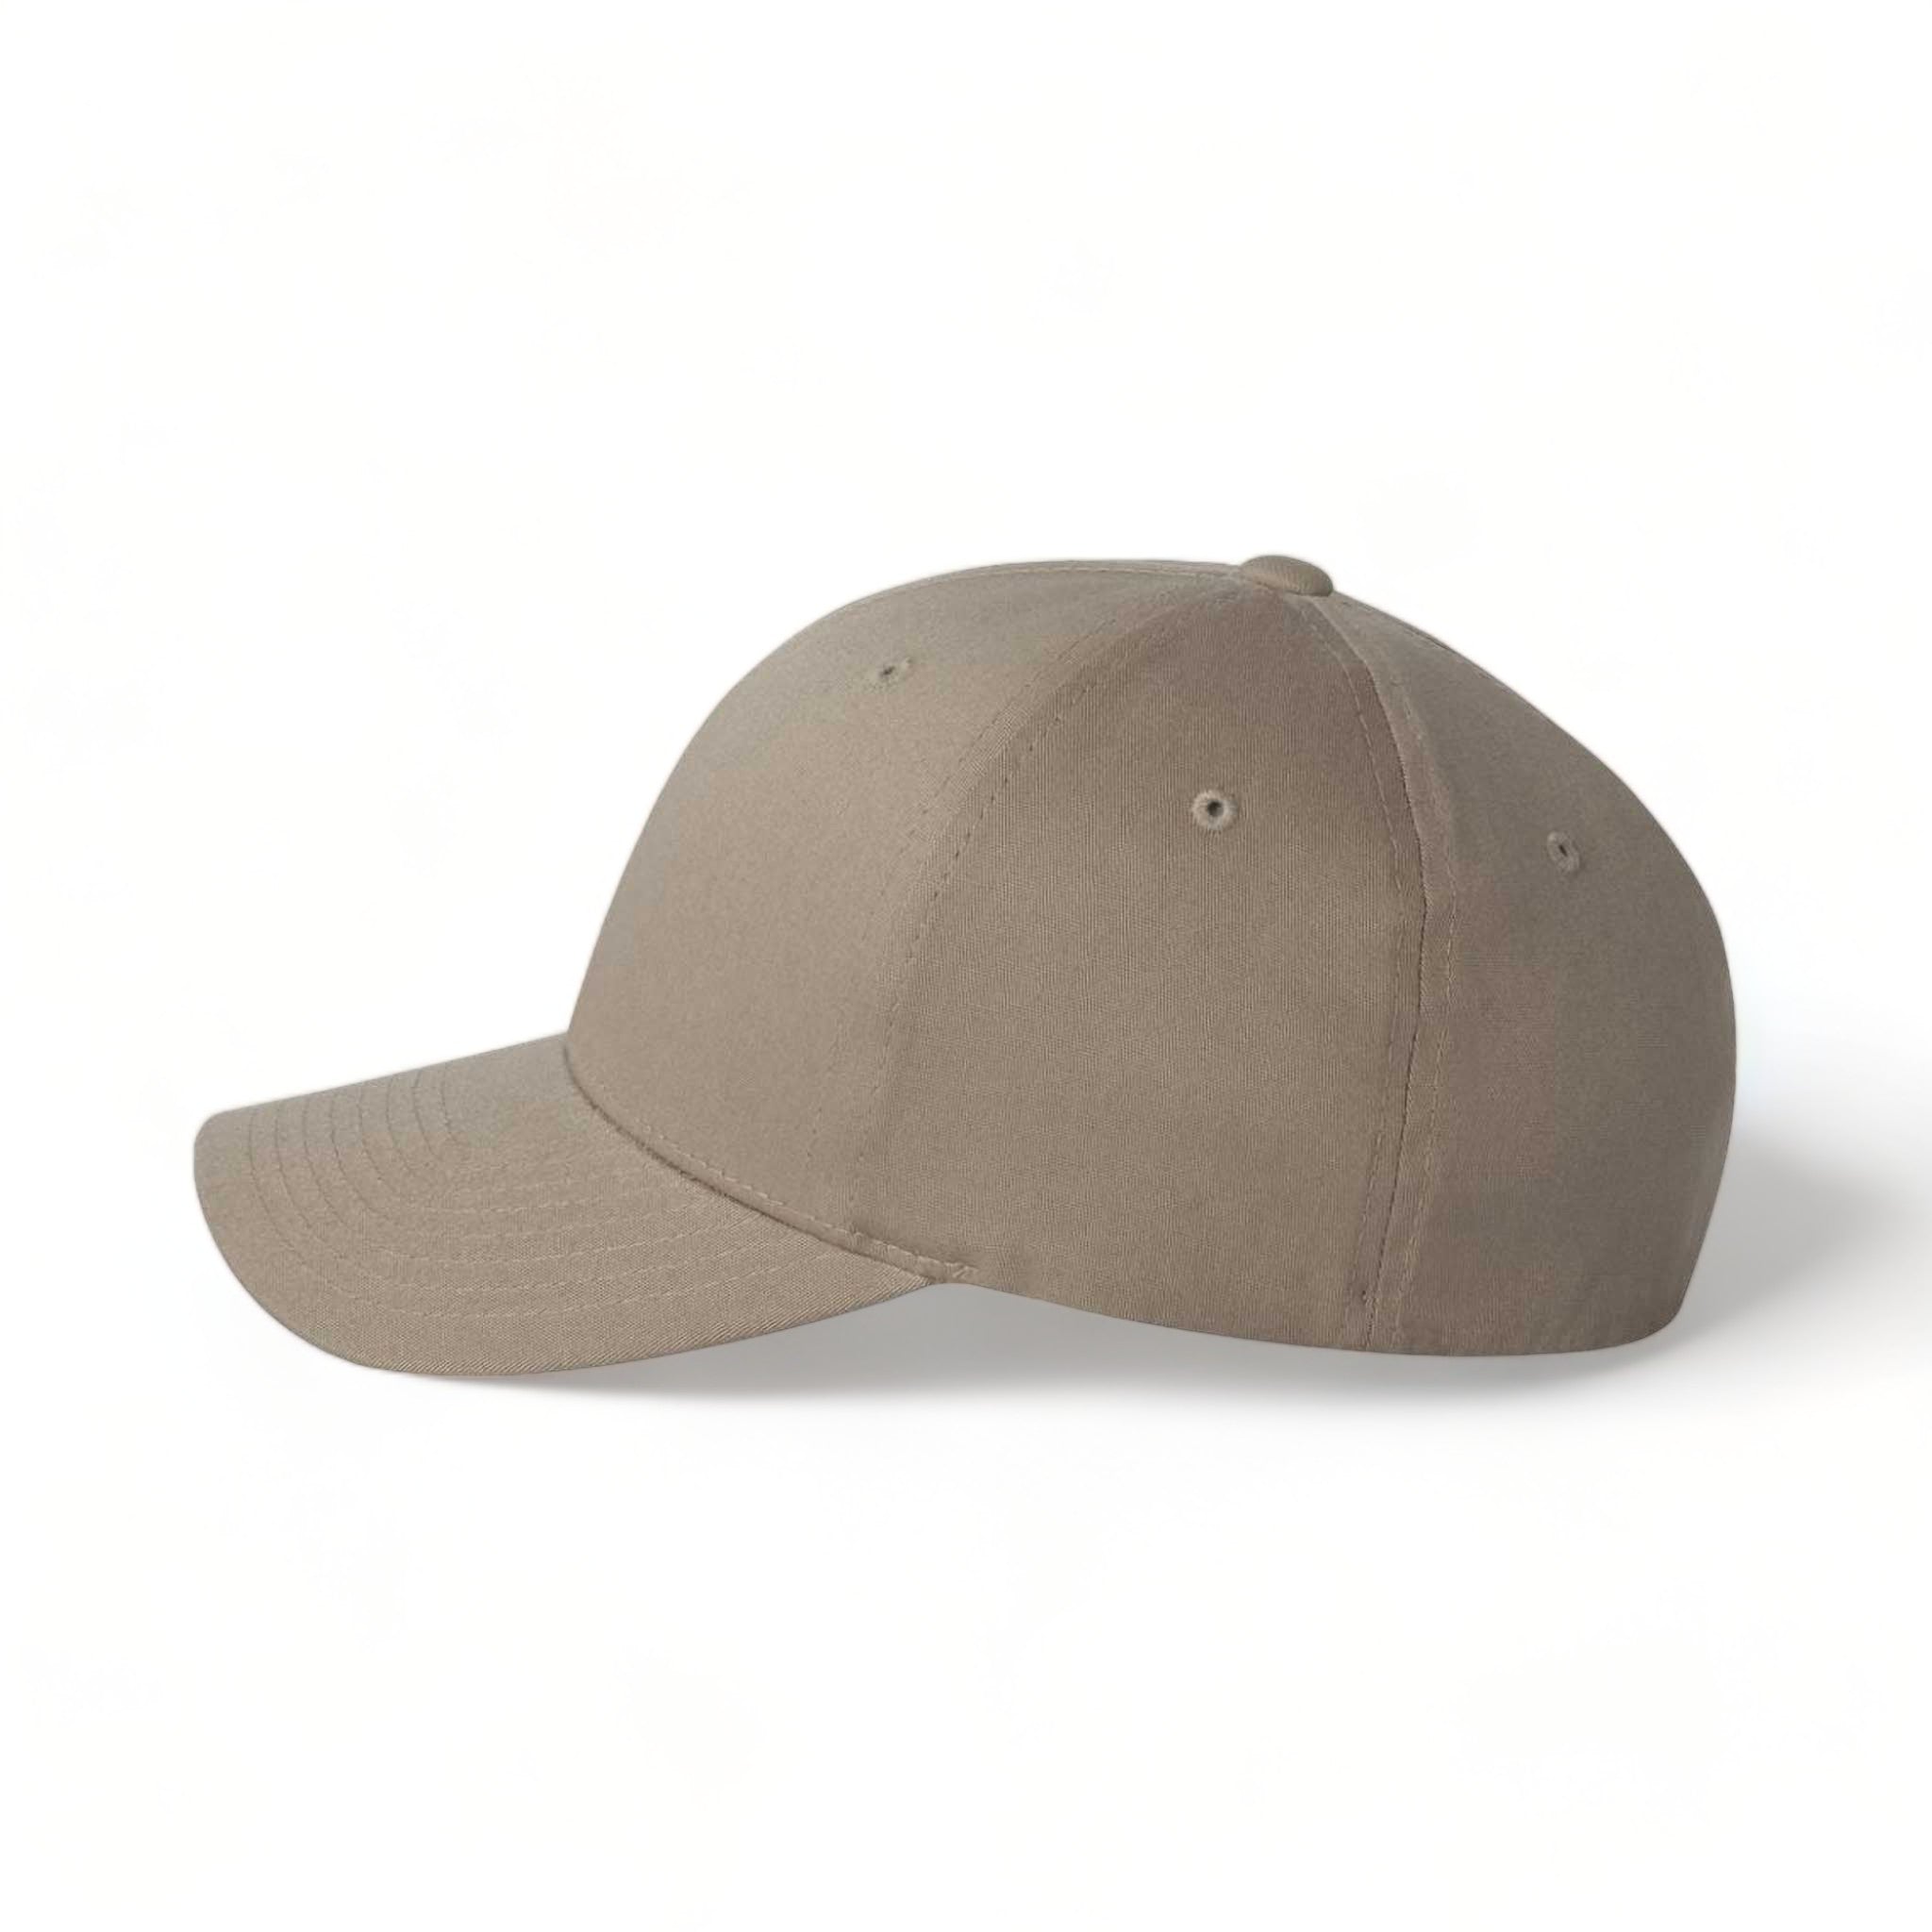 Side view of Flexfit 5001 custom hat in khaki